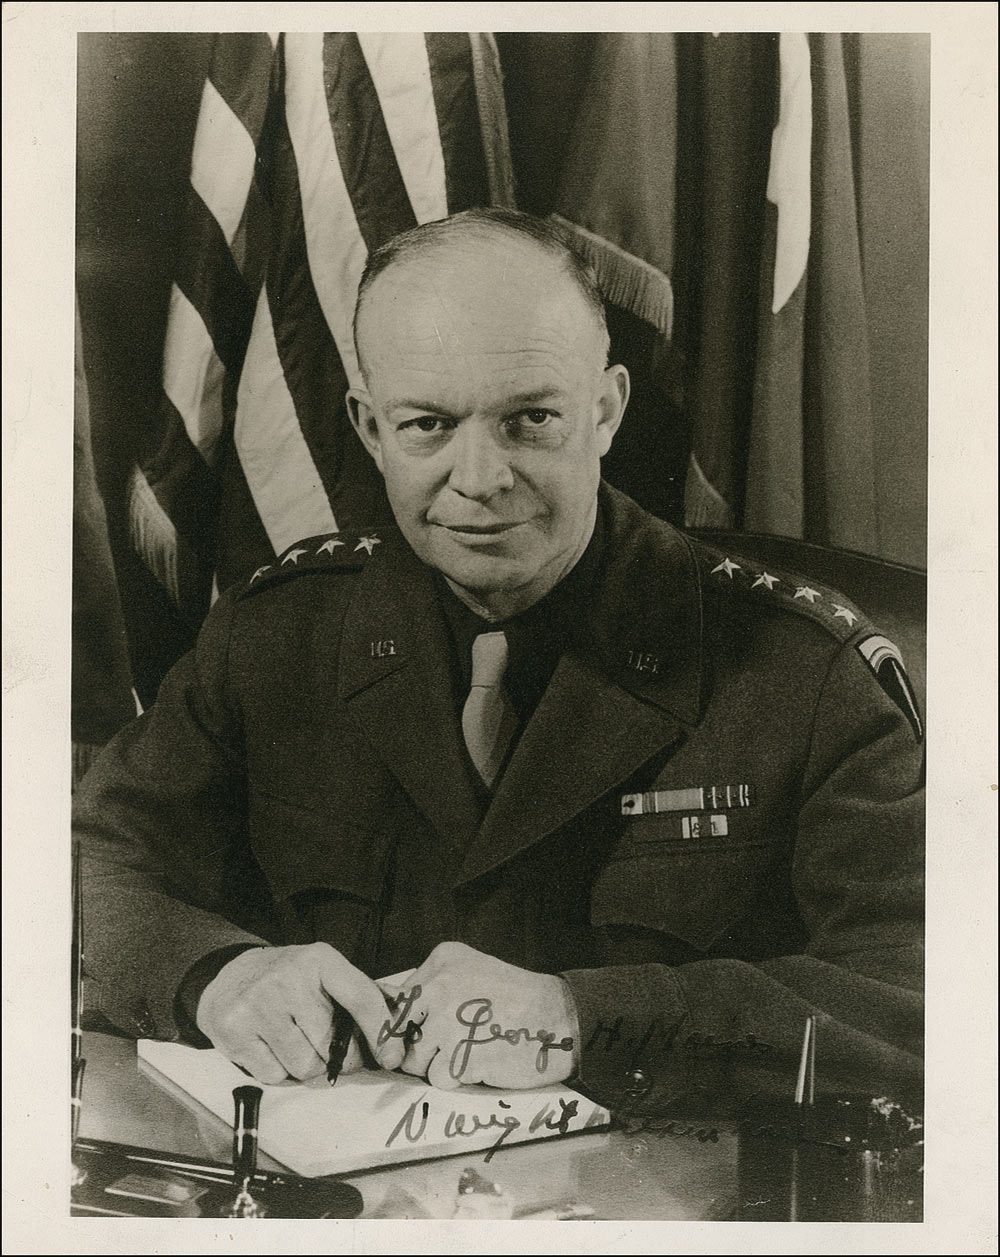 Lot #61 Dwight D. Eisenhower